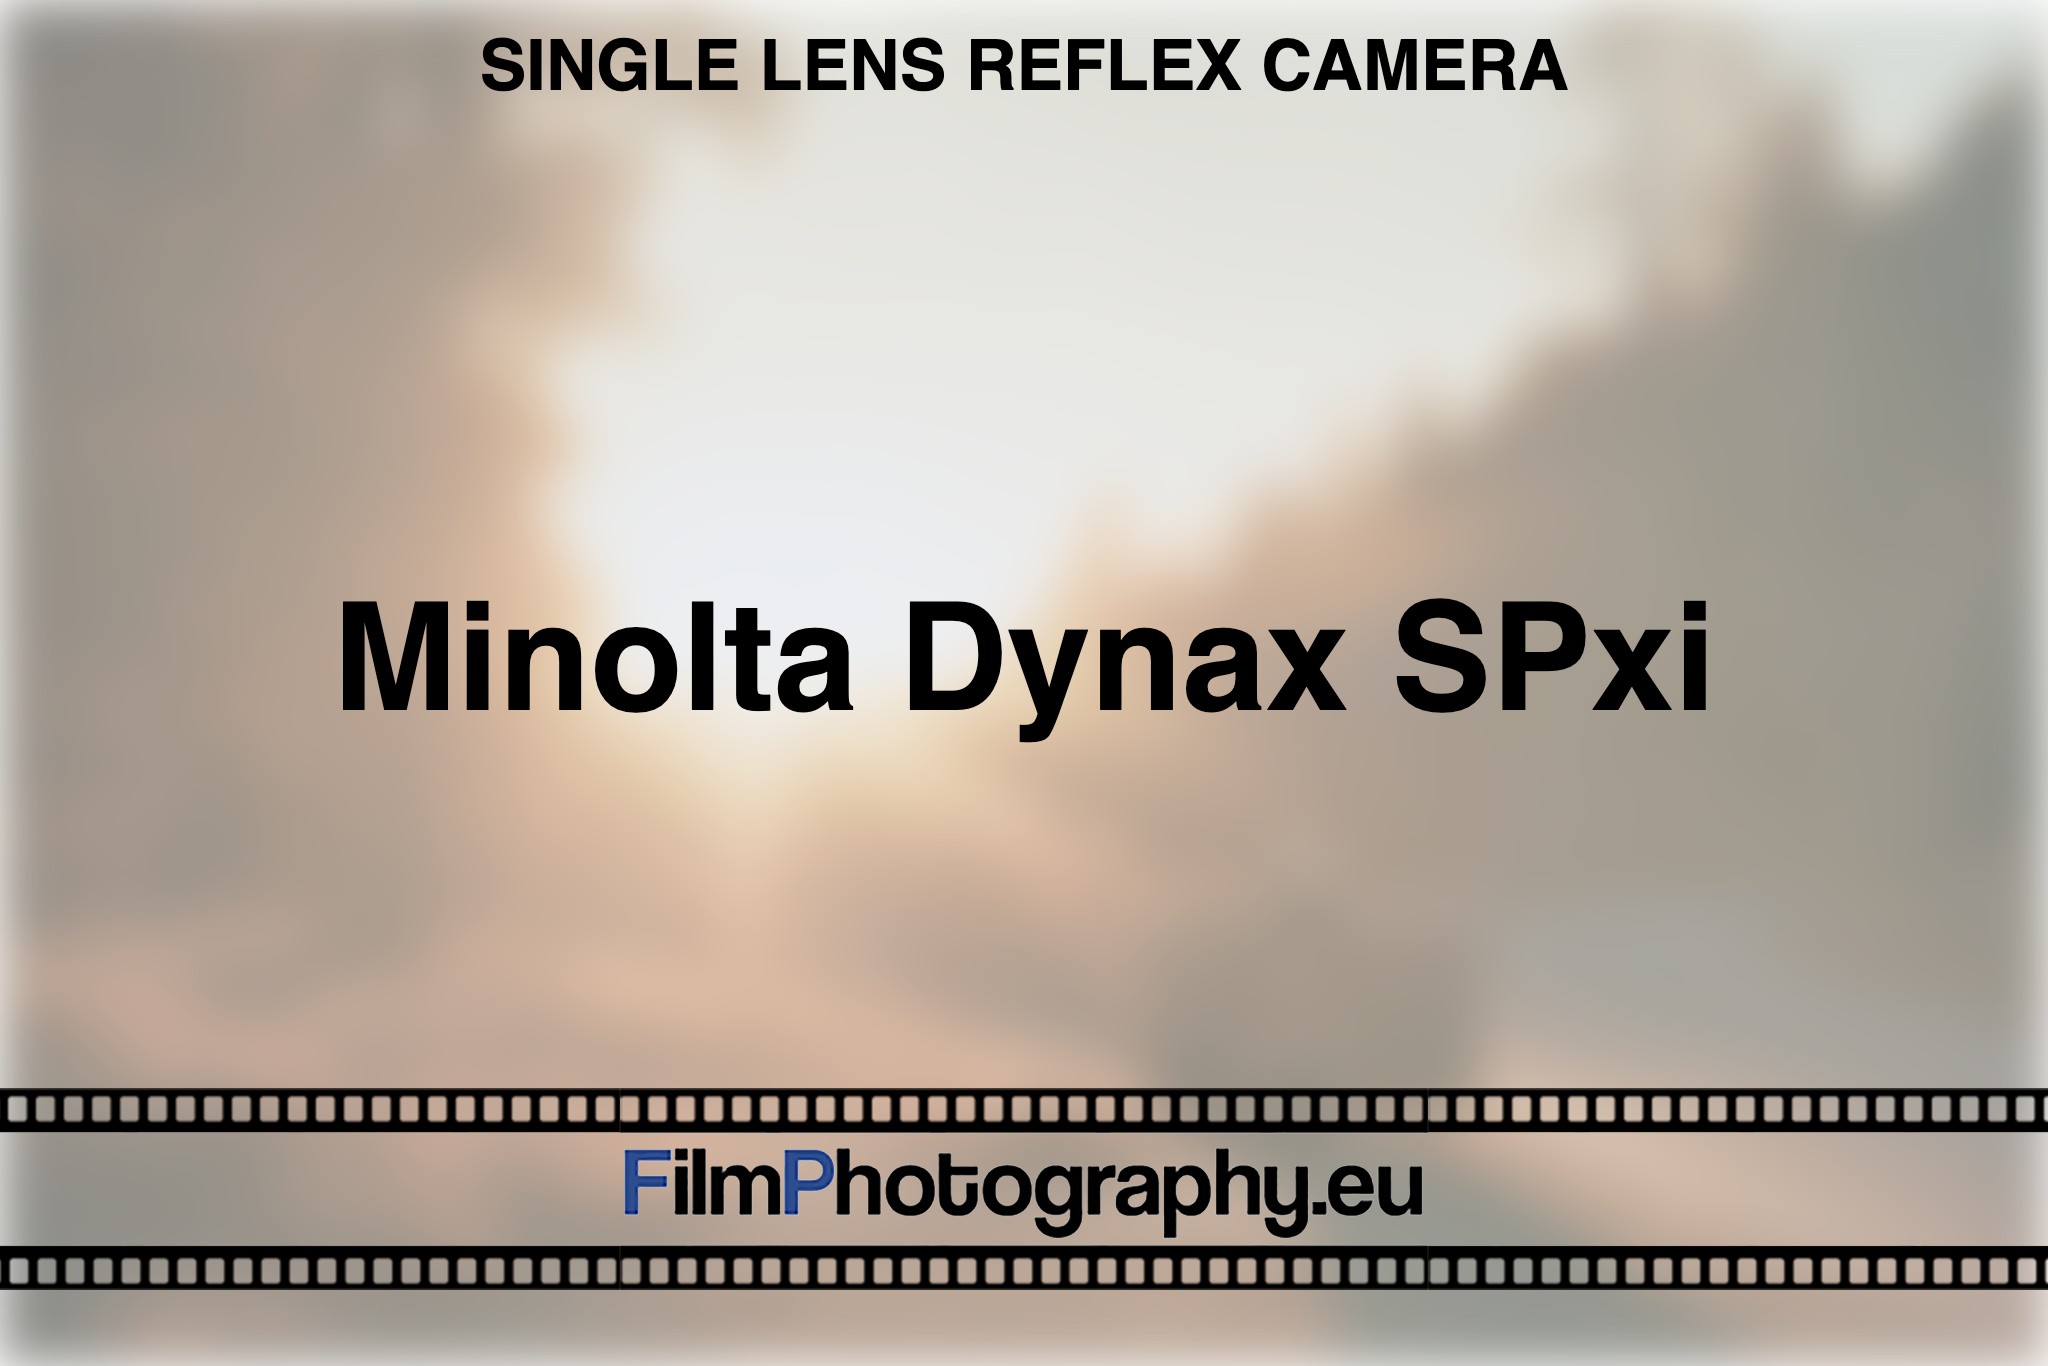 minolta-dynax-spxi-single-lens-reflex-camera-bnv